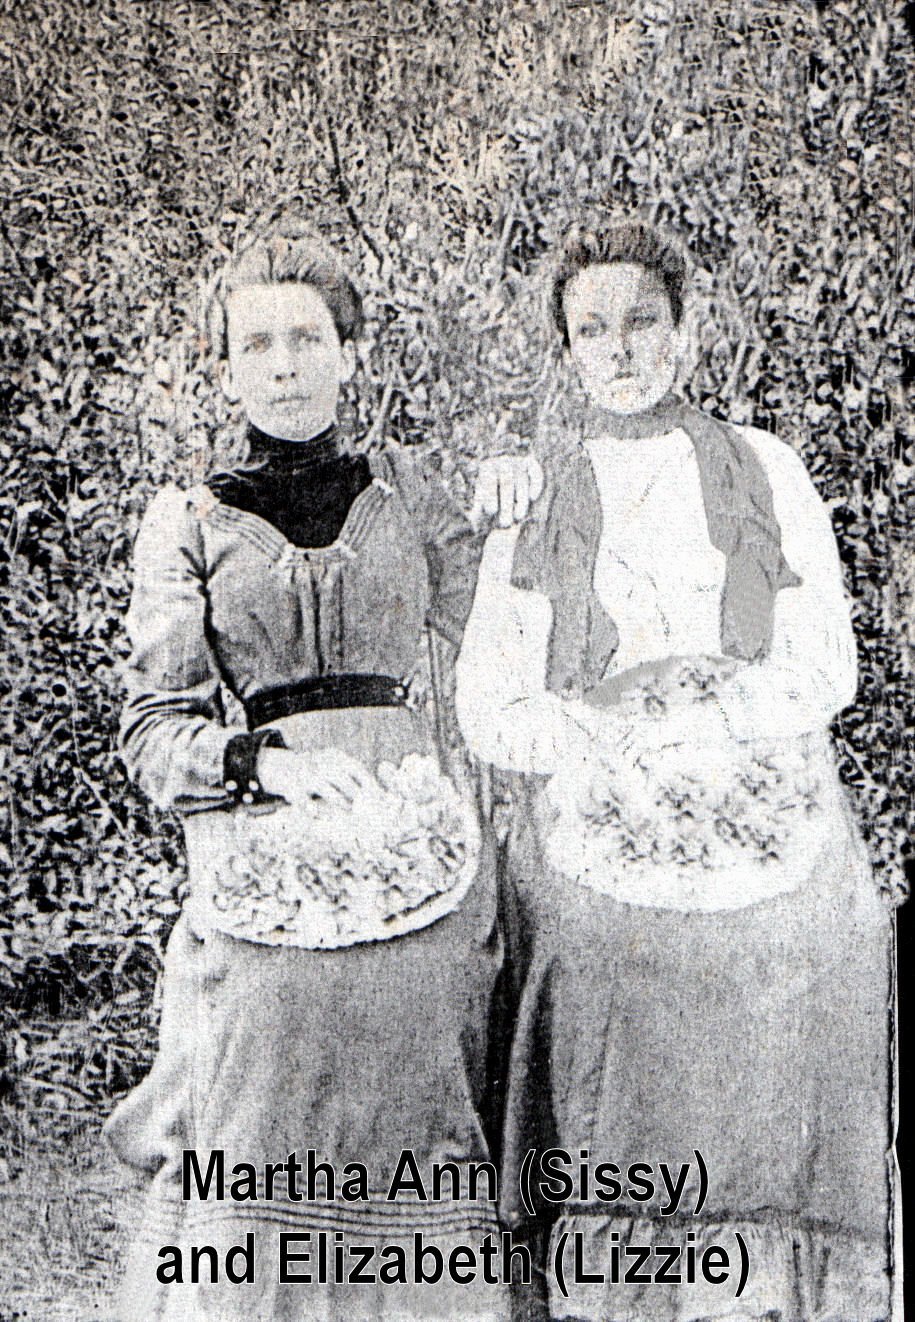 Martha Ann and Elizabeth